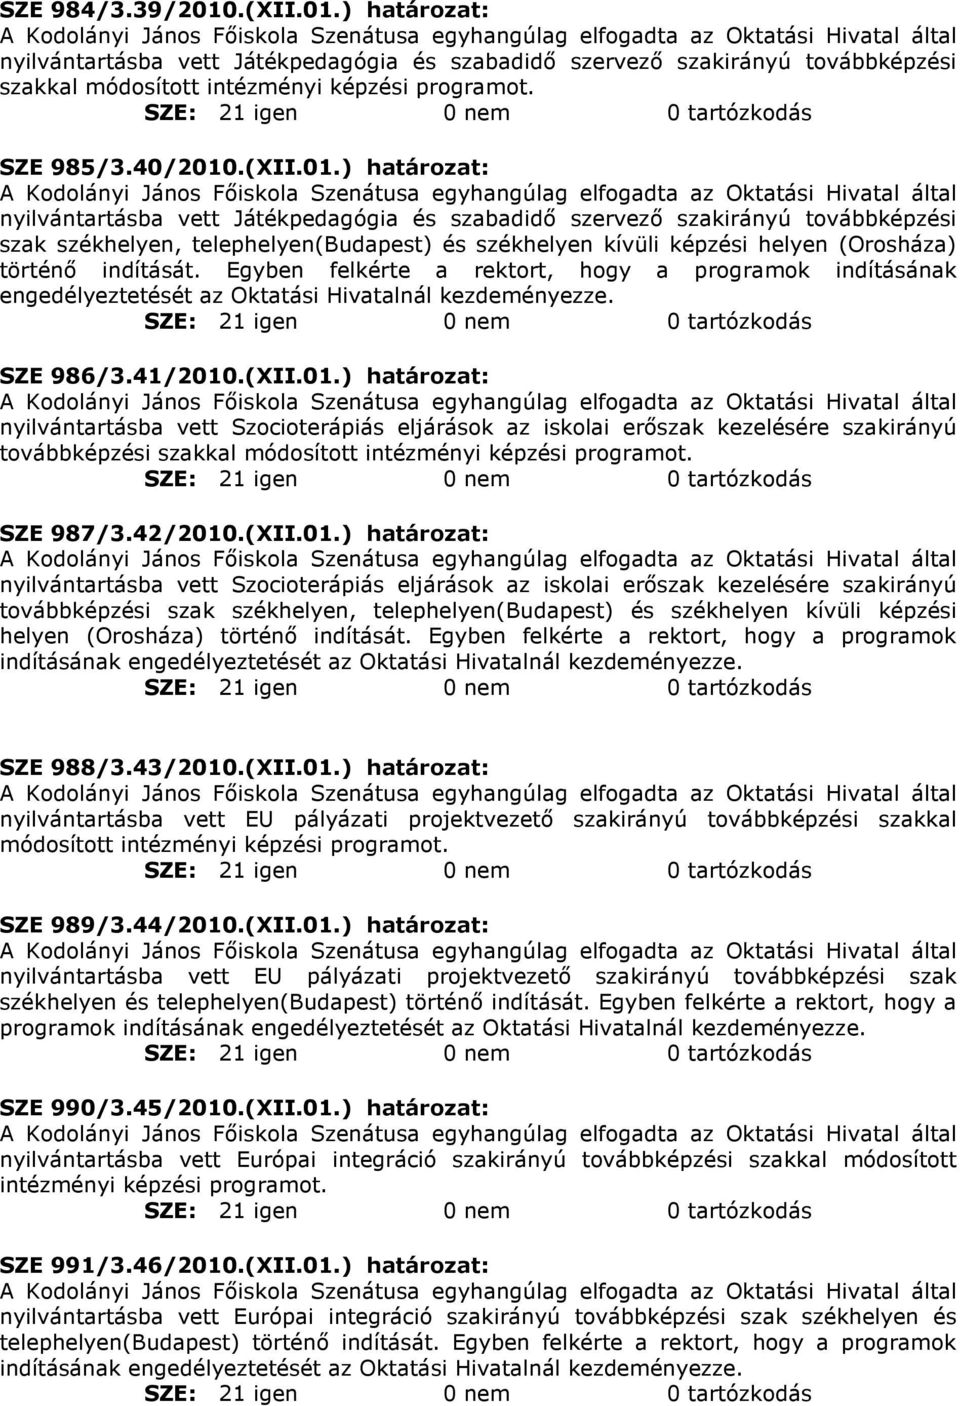 ) határozat: nyilvántartásba vett Játékpedagógia és szabadidı szervezı szakirányú továbbképzési szakkal SZE 985/3.